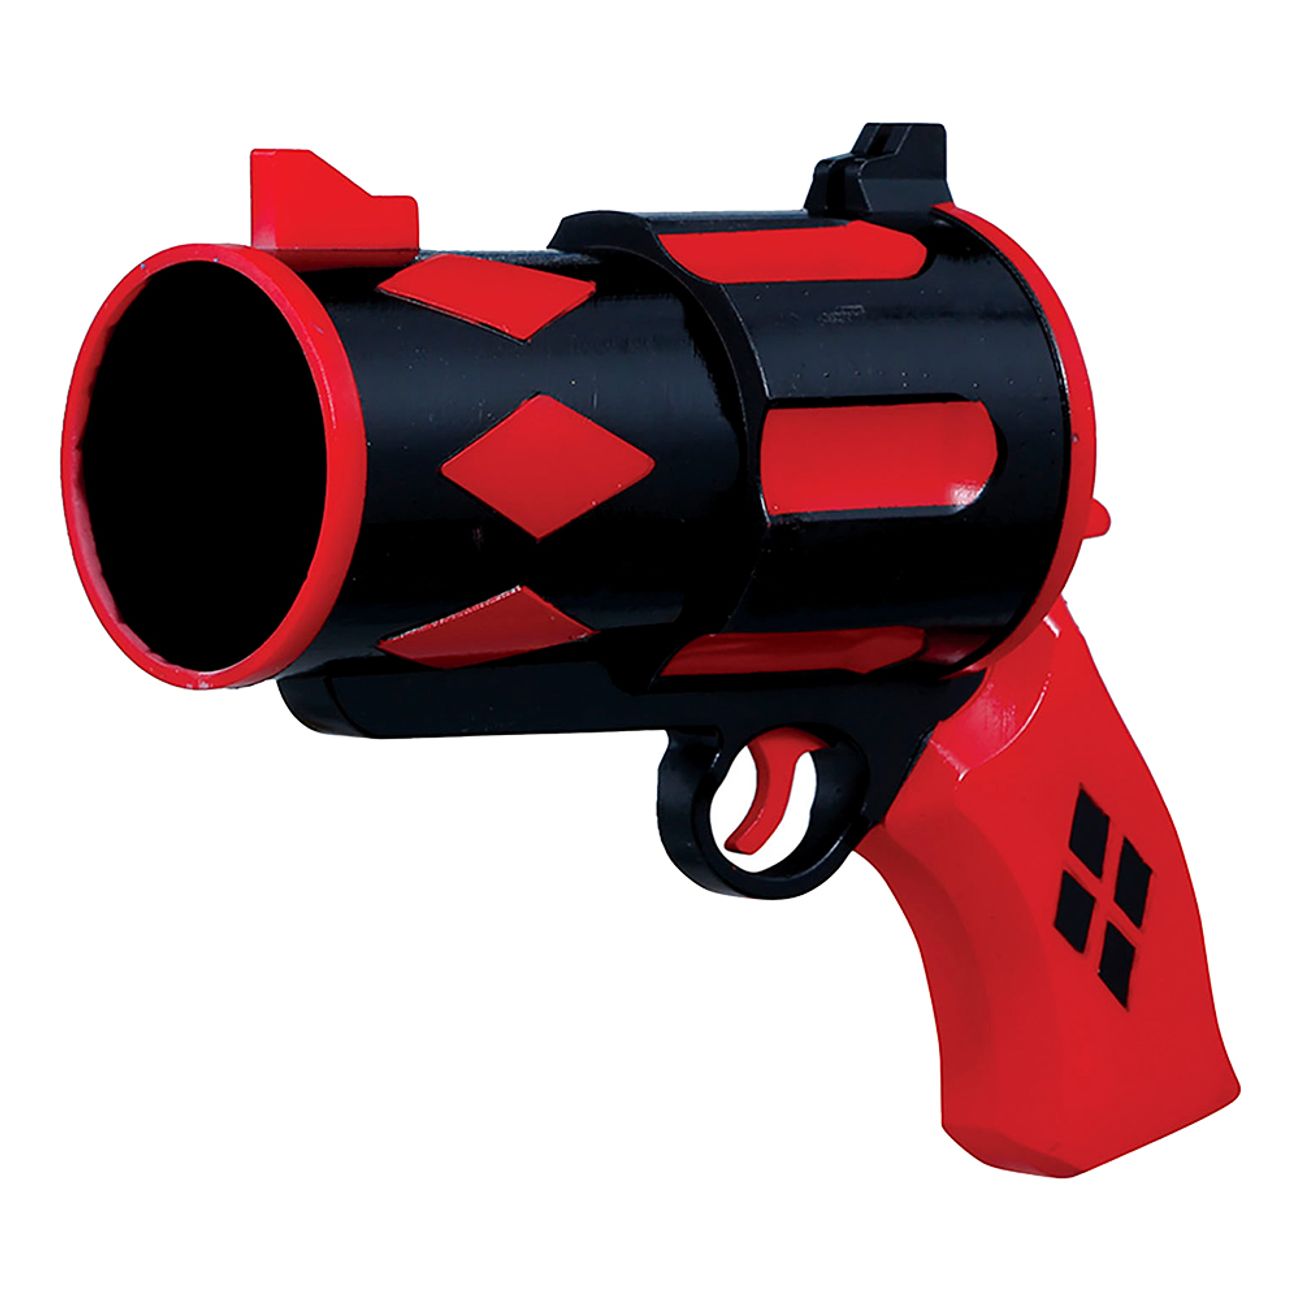 dangerous-rodsvart-pistol-98417-2